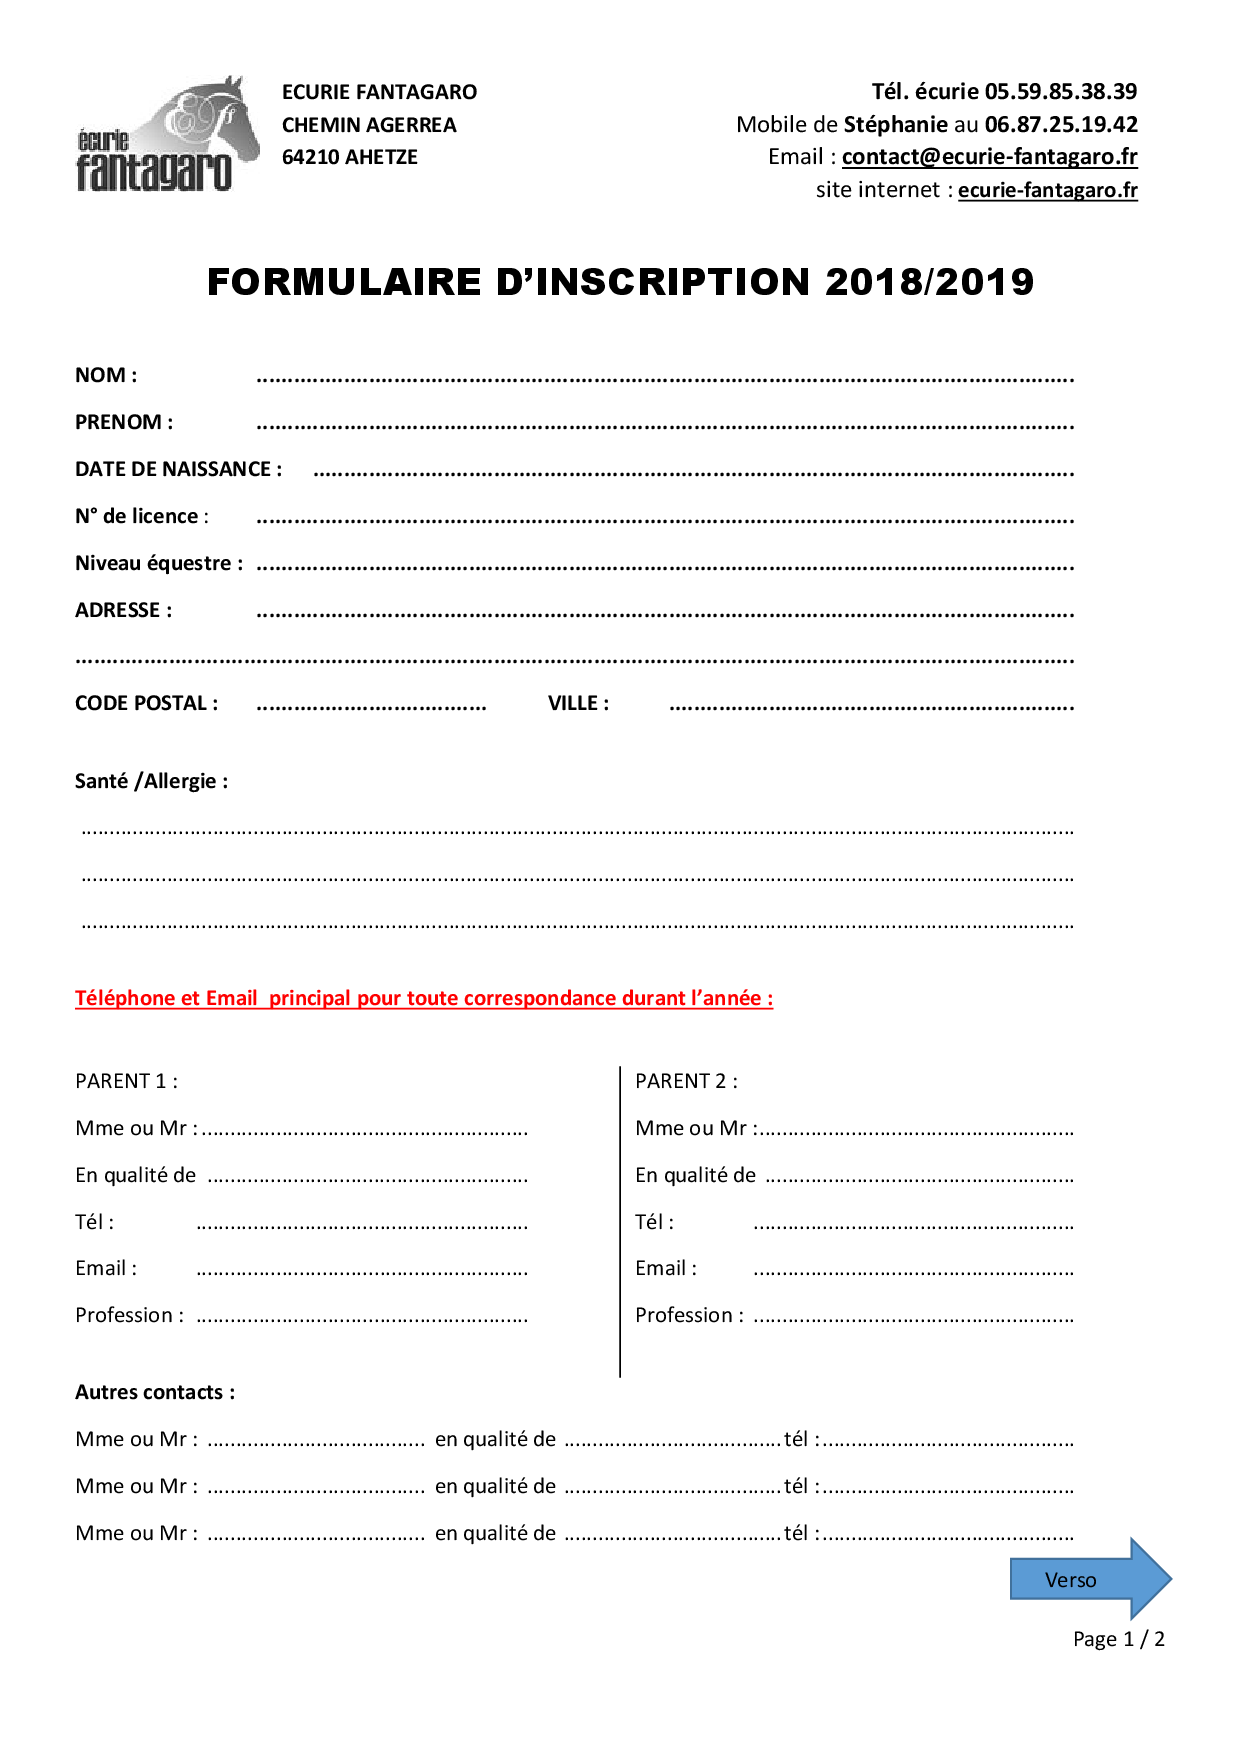 formulaire d'inscription 2018 - 2019 - PAGE 1